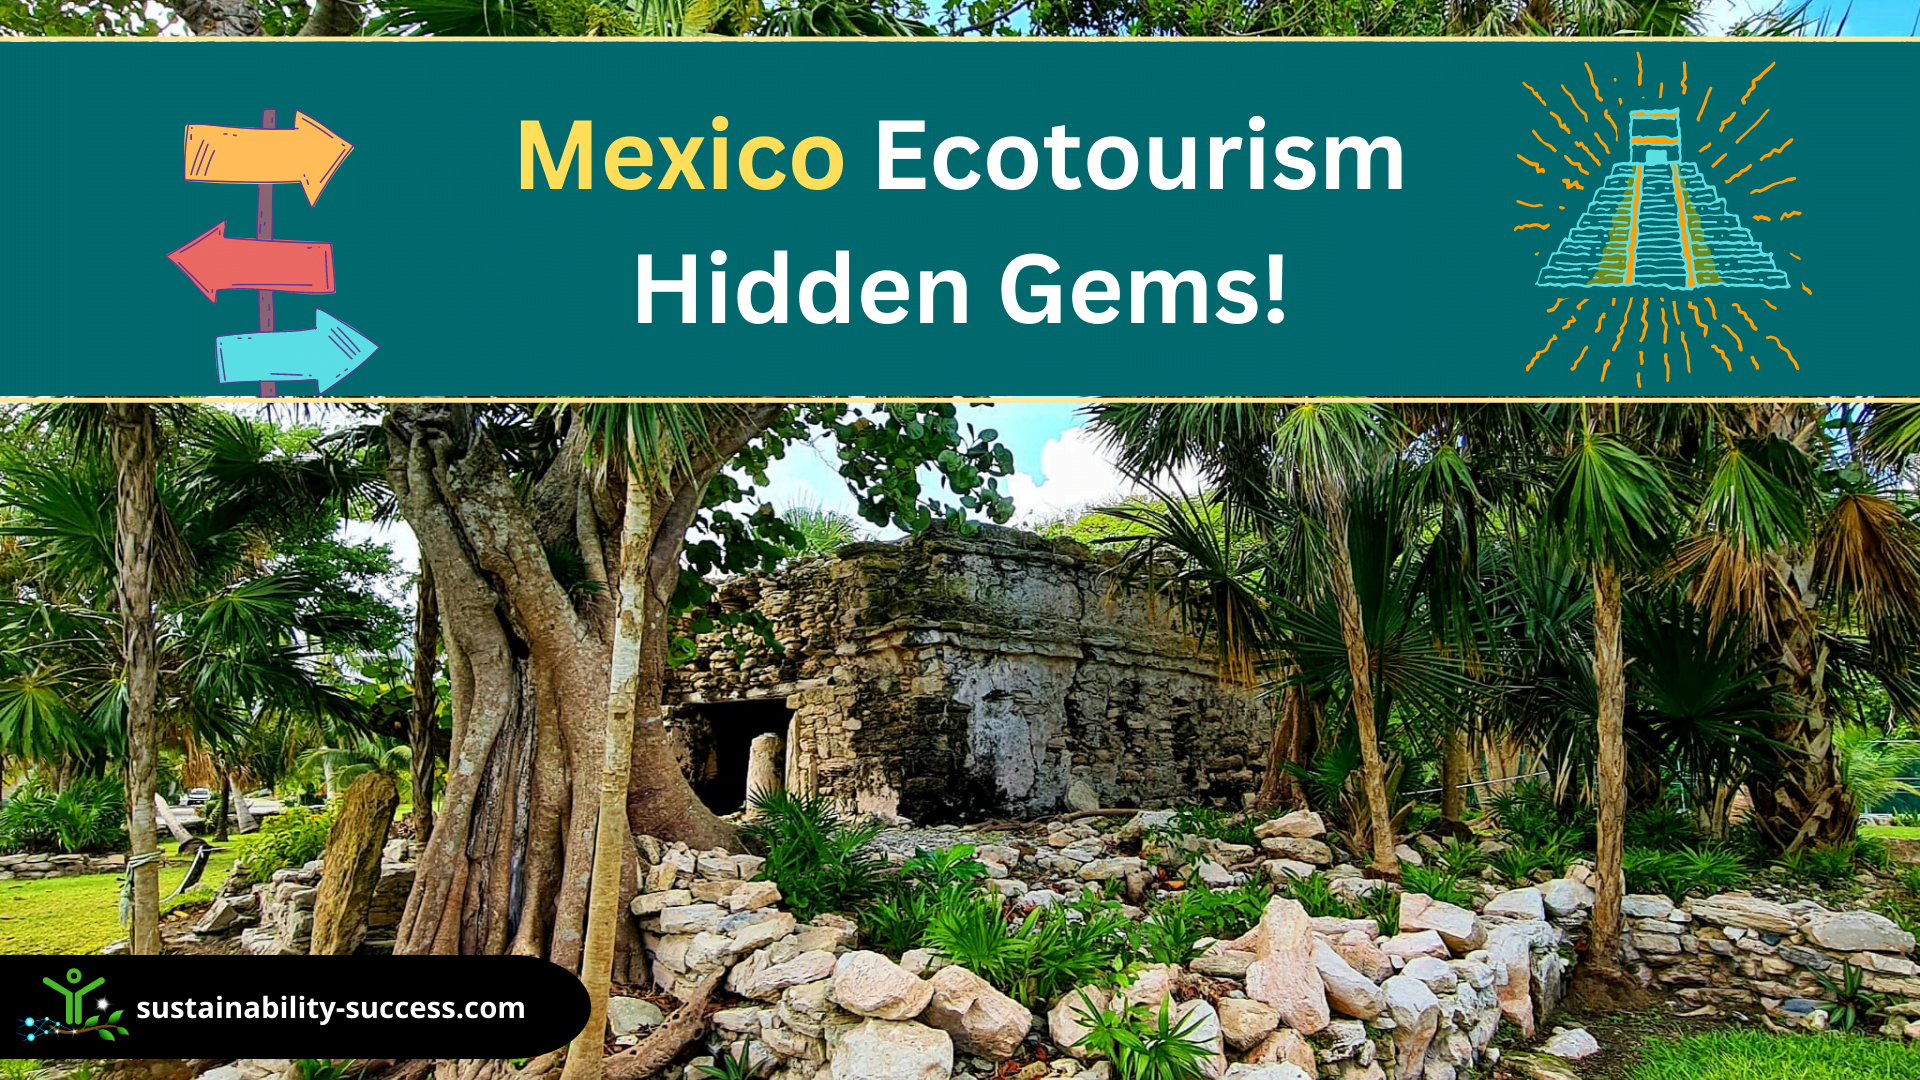 Mexico ecotourism